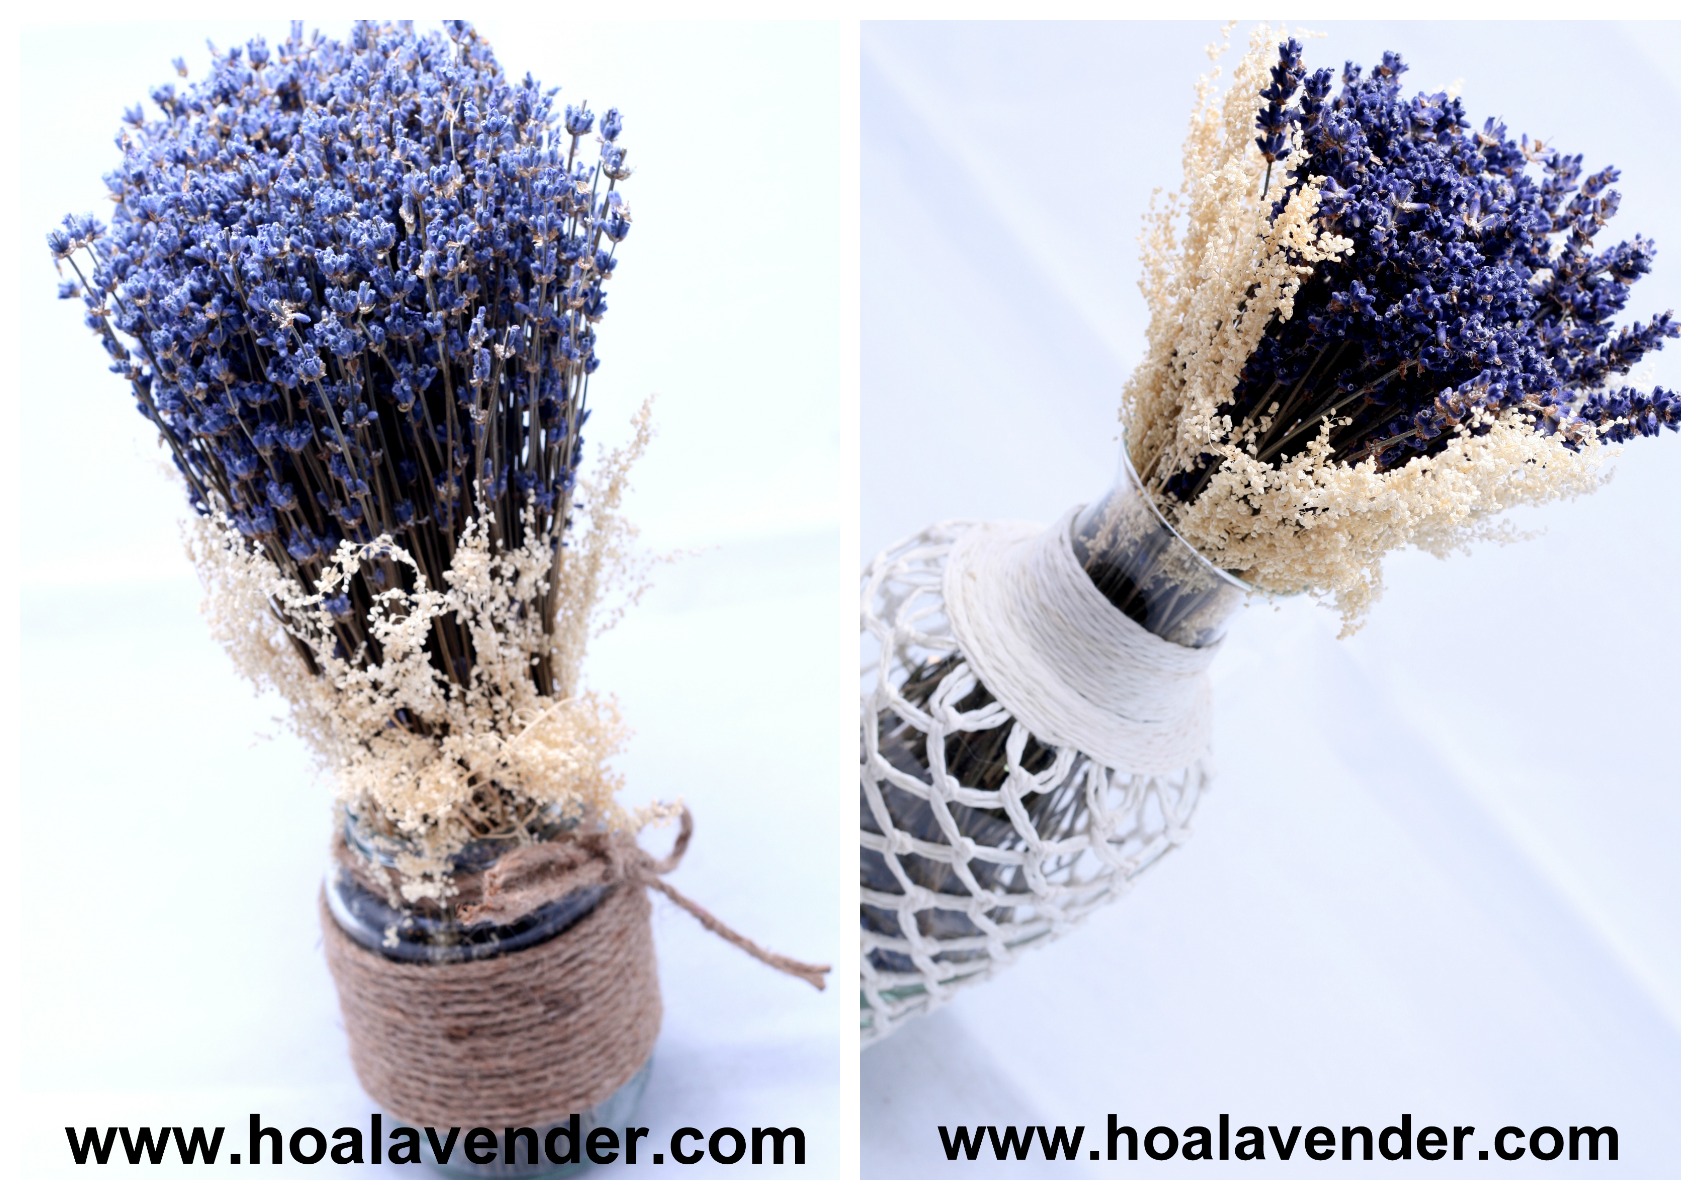 Sốt “xình xịch” với xu hướng chọn hoa lavender khô làm quà